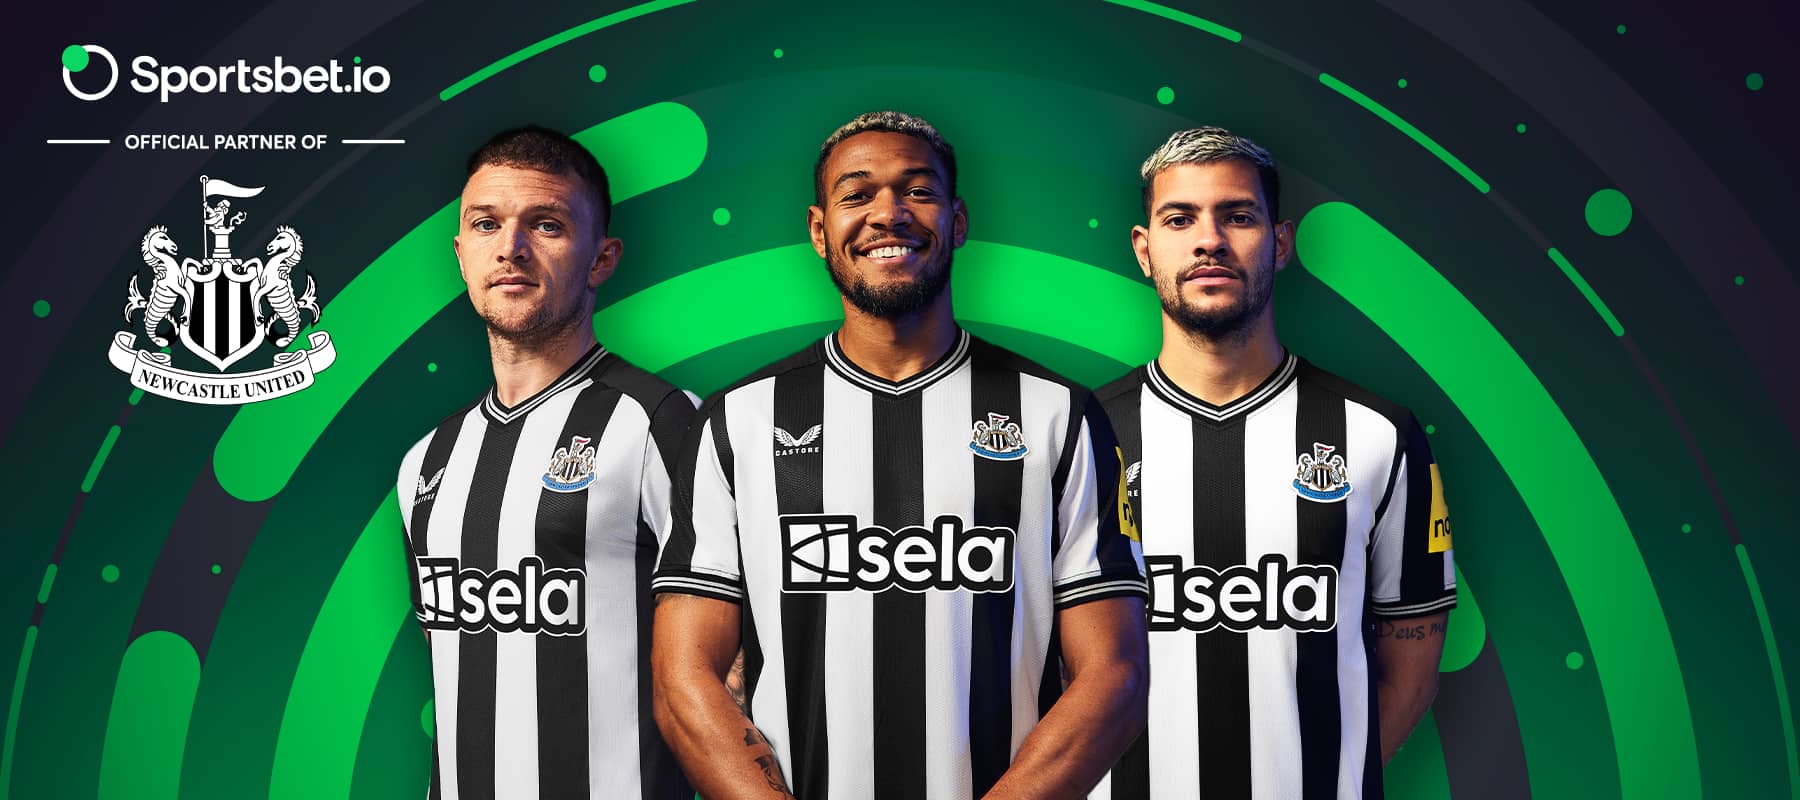 Viser des sommets plus élevés : le partenariat entre Sportsbet.io et Newcastle United.